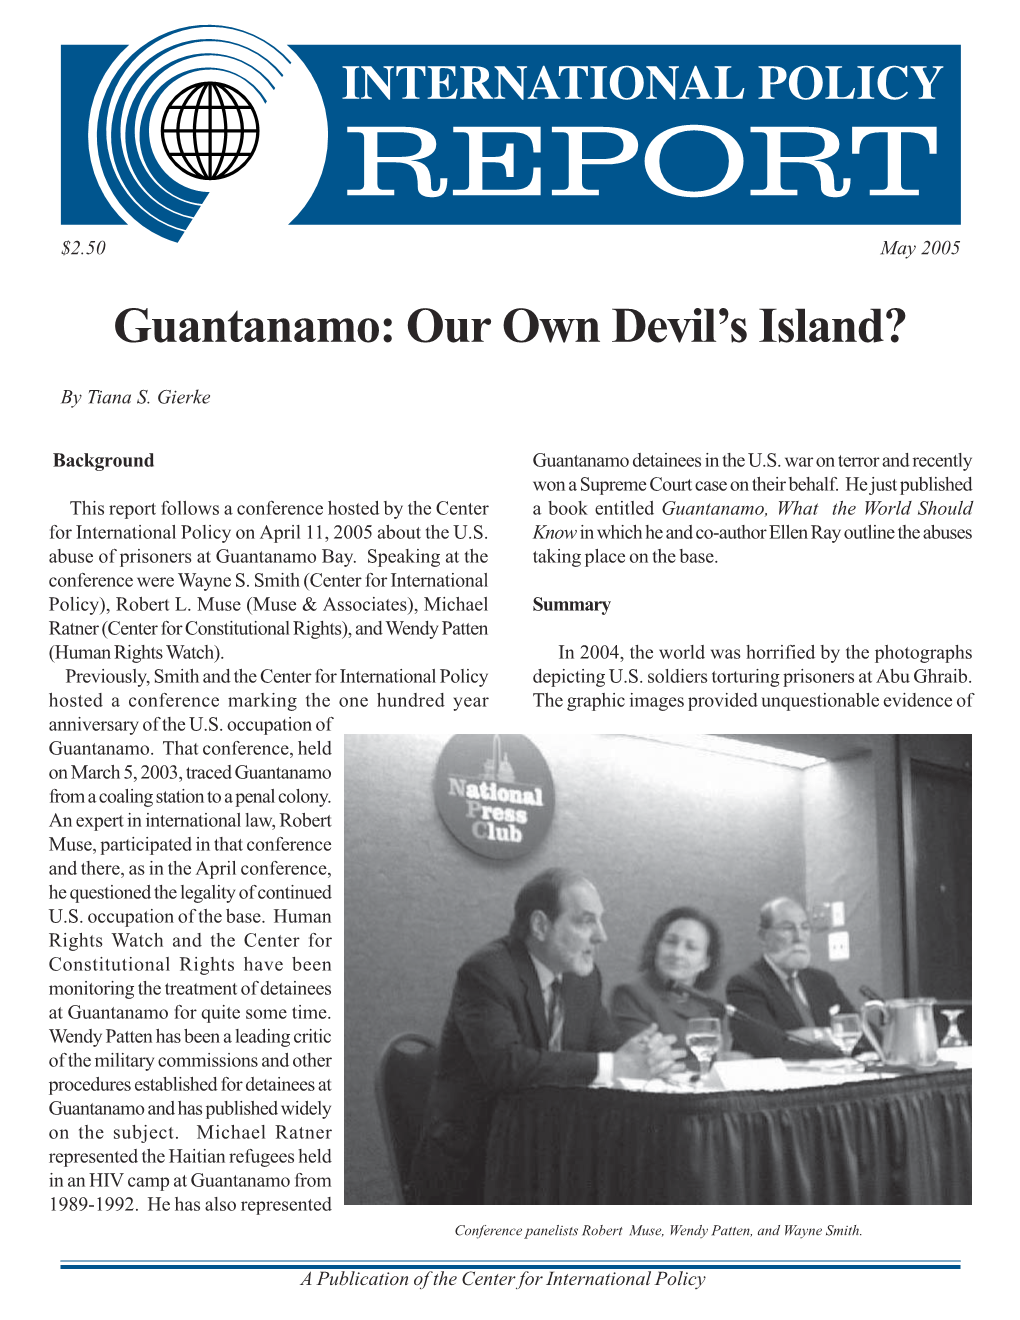 Guantanamo: Our Own Devil's Island?